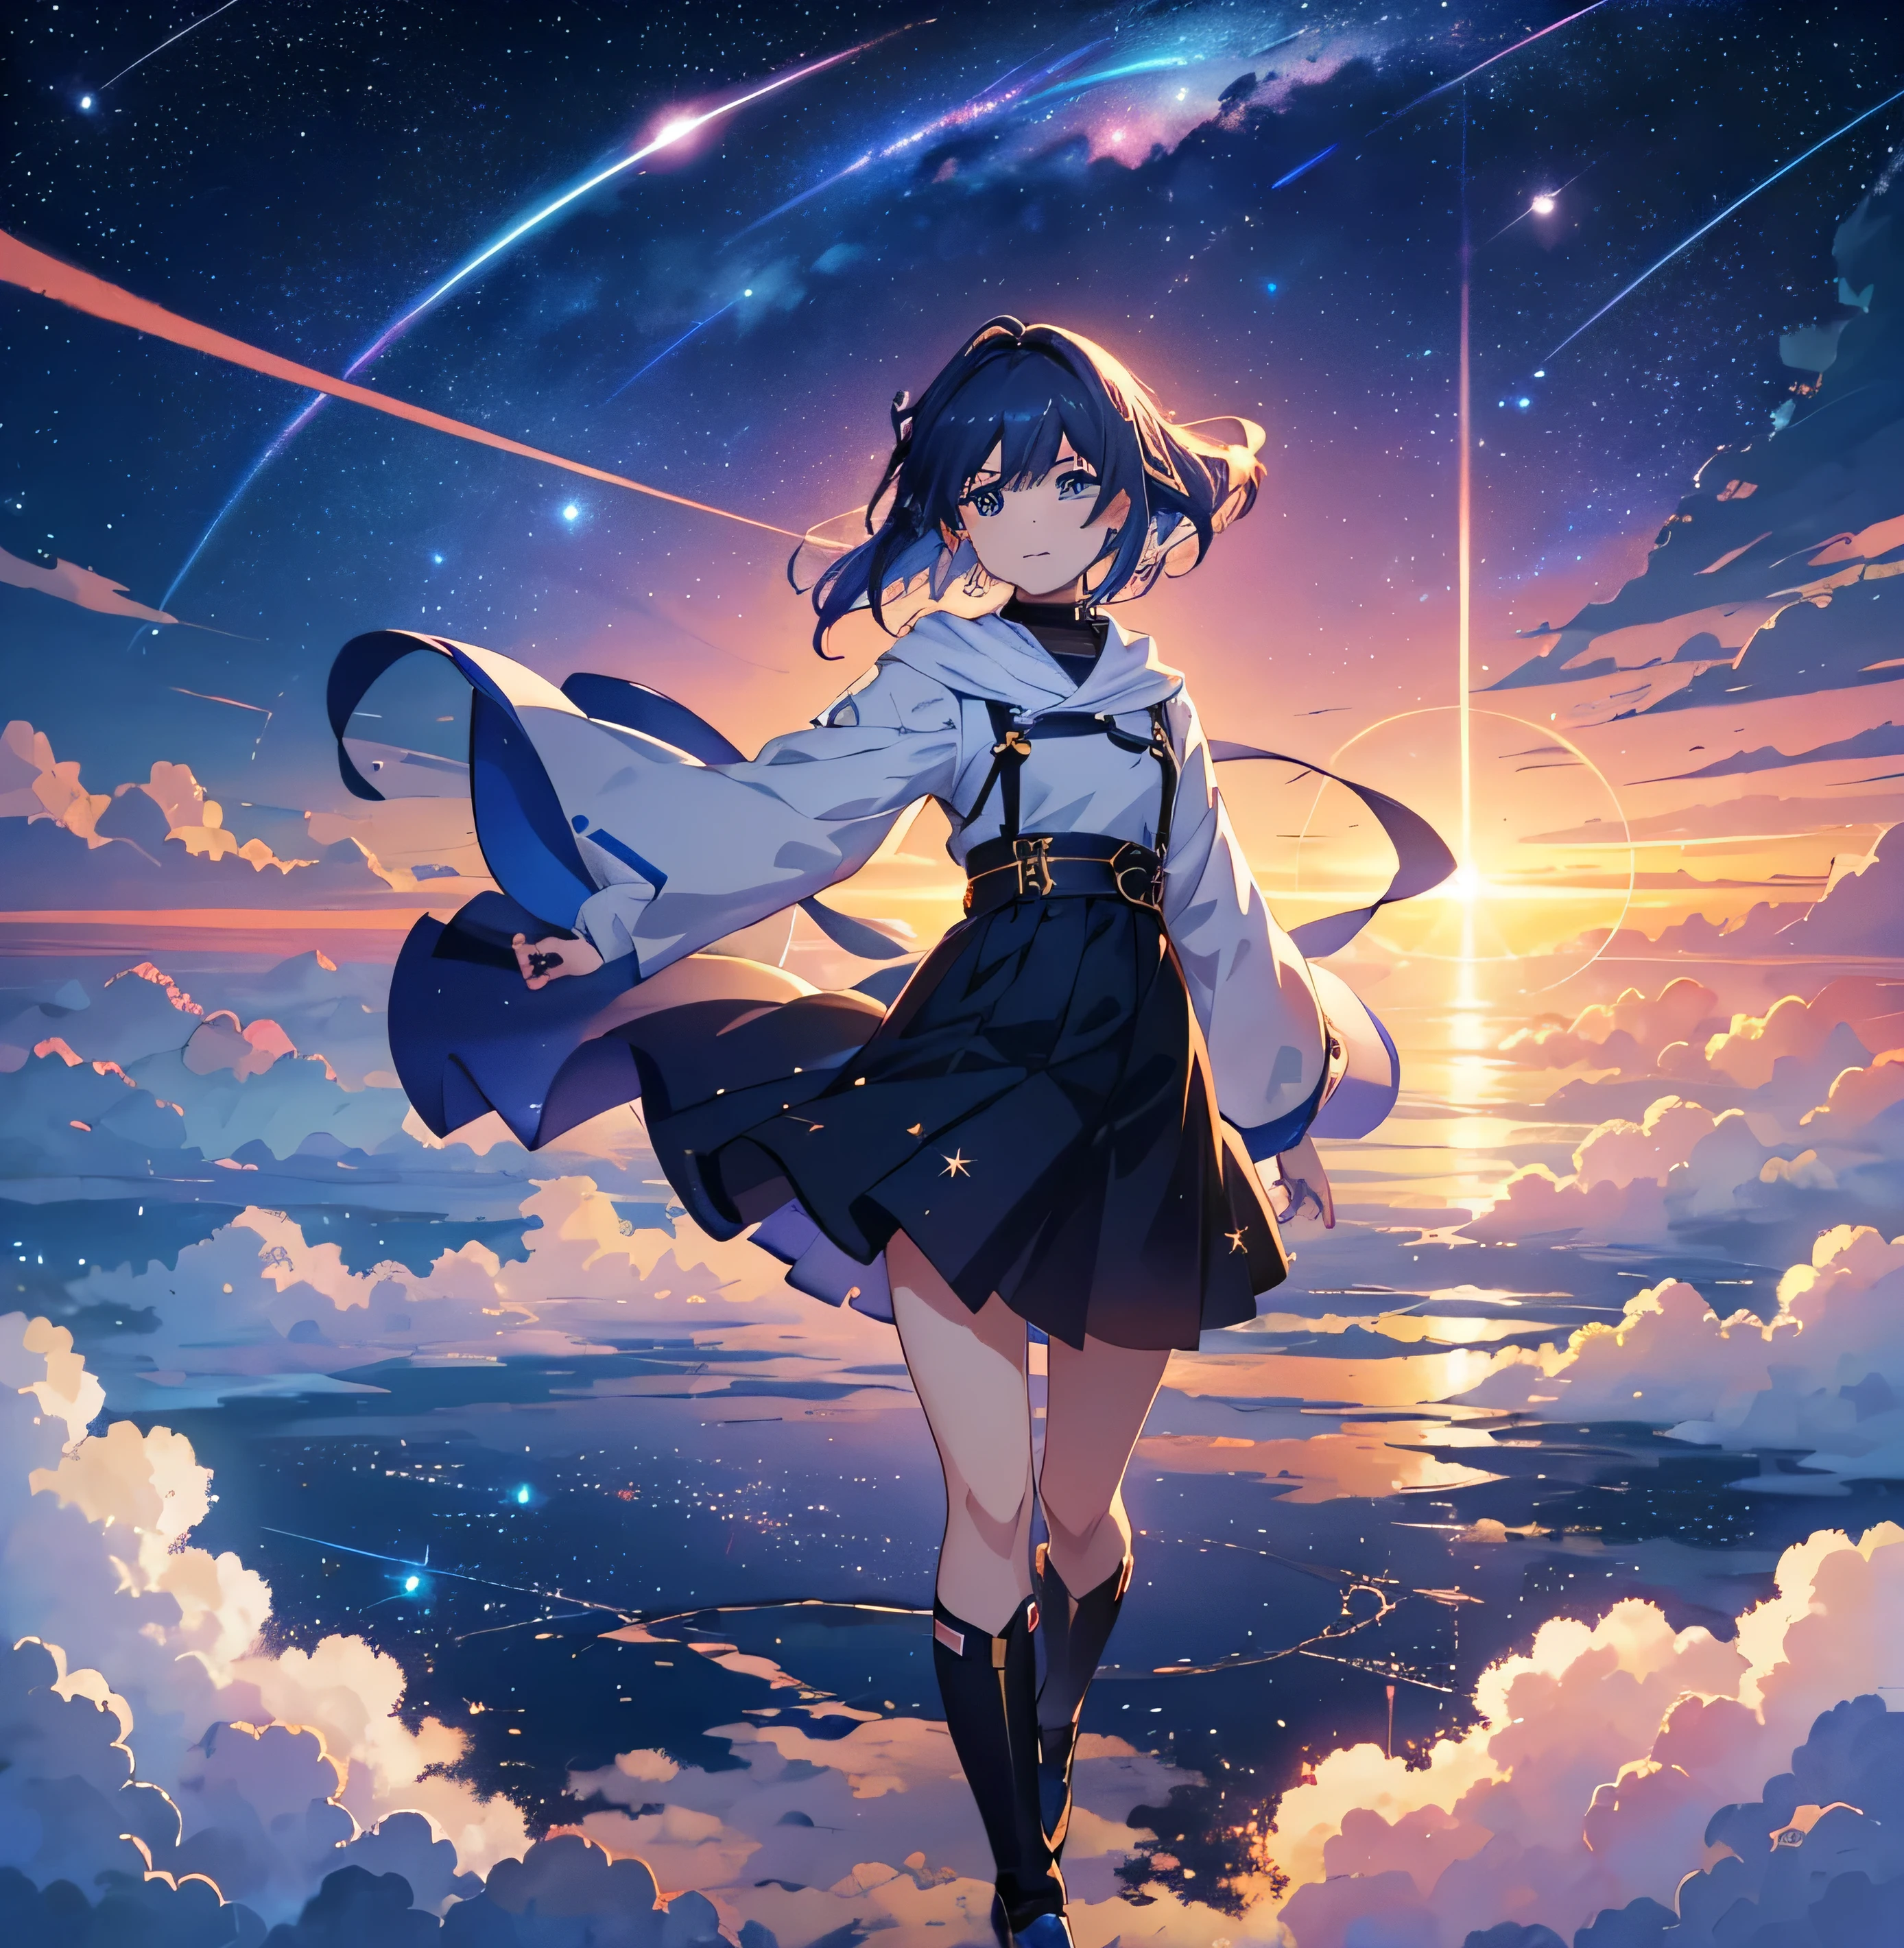 Galaxy Railroad avec des rails dans le ciel、Le train aérien roule sur des rails、Mer de nuages、Belle scène d&#39;animation du ciel avec des étoiles et des planètes, Ville abandonnée flottant sur la mer,ciel spatial. par Makoto Shinkai, fond d&#39;écran animé 4k, fond d&#39;écran animé 4k, Fonds d&#39;écran d&#39;art animé 8K, Fond d&#39;écran animé 4k, Fond d&#39;écran animé 4k, Fond d&#39;écran animé 4k, ciel animé, Fonds d&#39;écran impressionnants, fond d&#39;anime, Planètes célestes en arrière-plan, fond d&#39;anime art